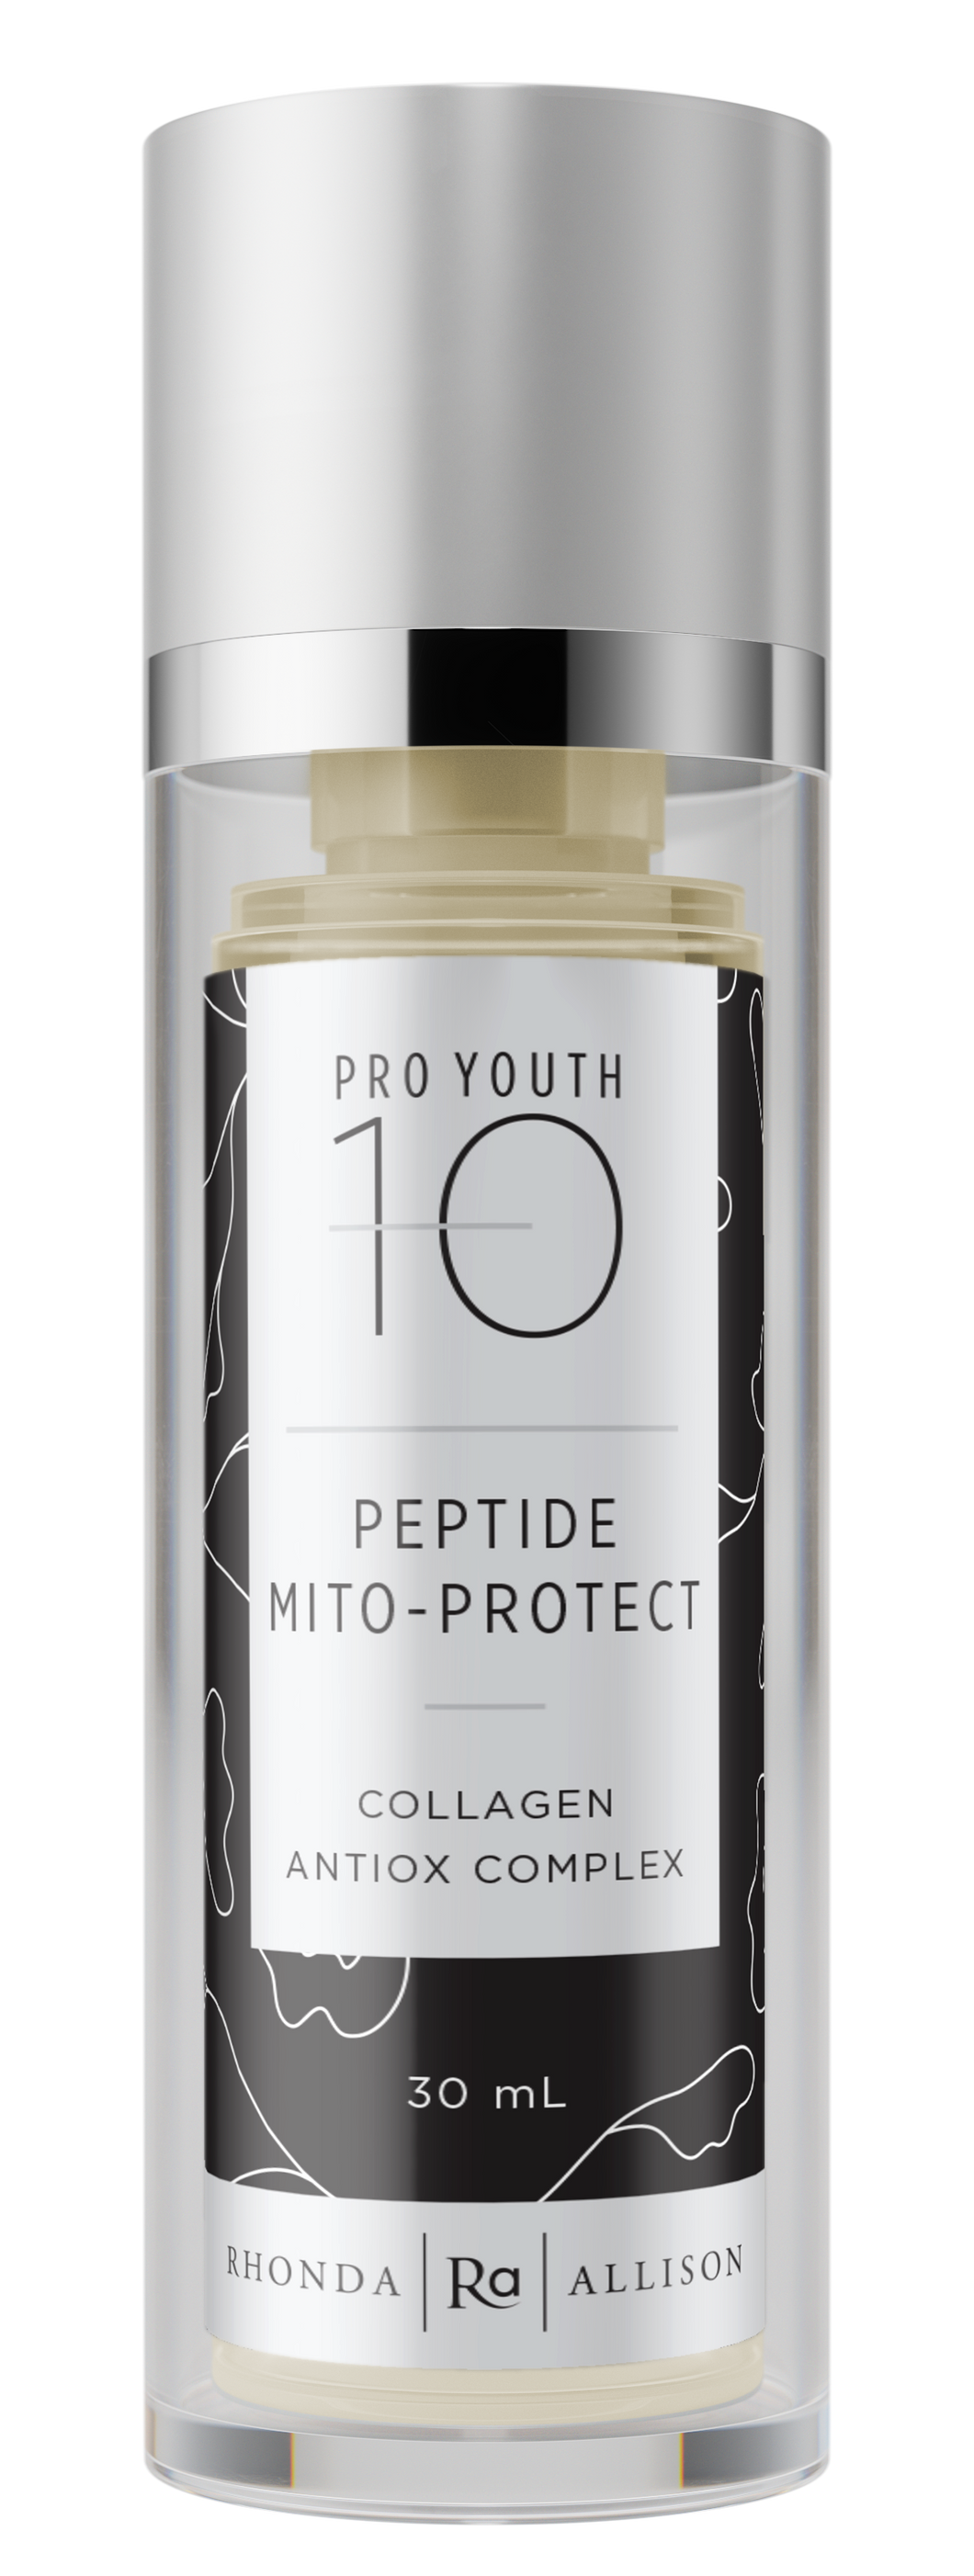 Peptide Mito-Protect - 30 mL